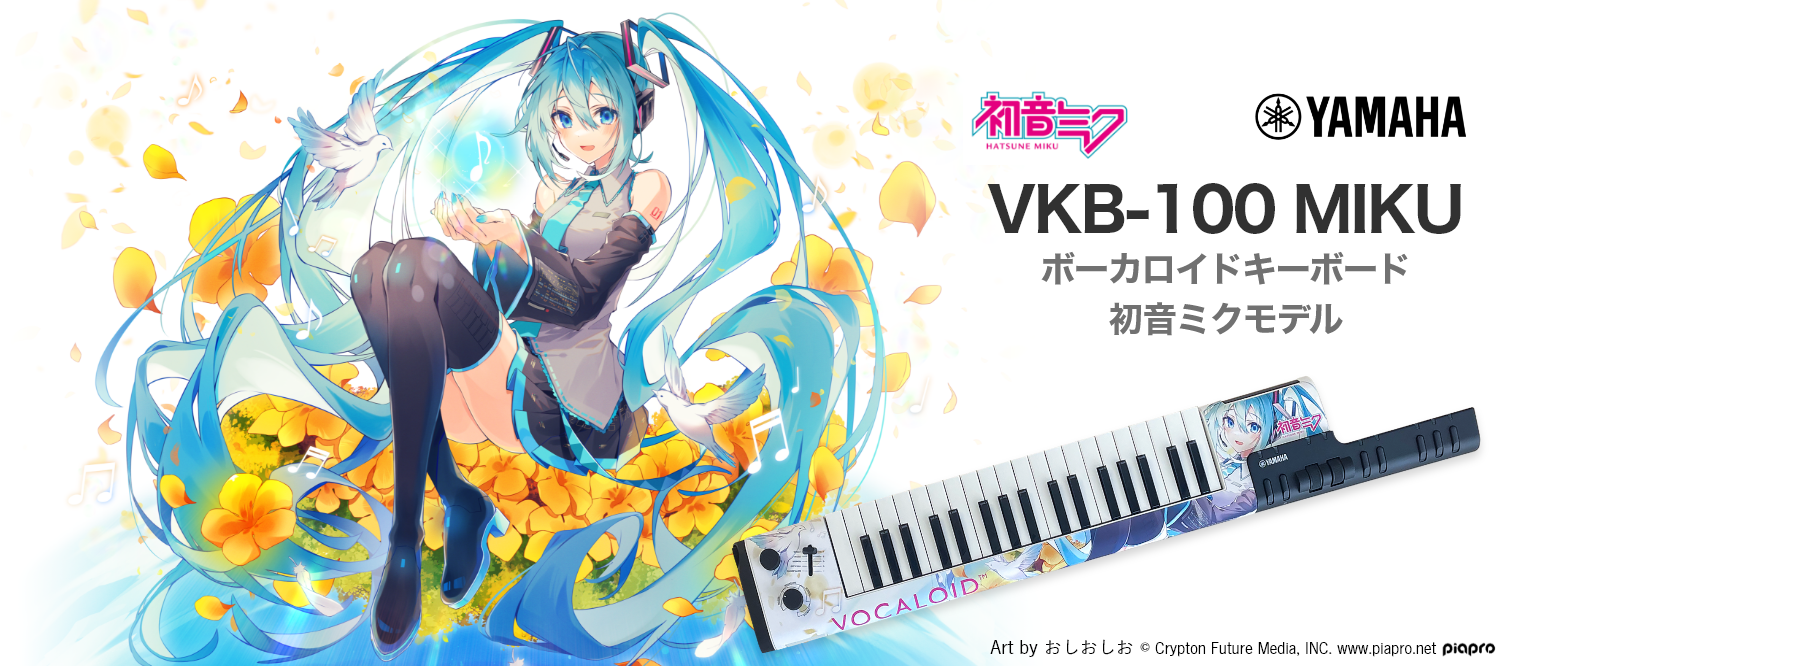 新商品 Vkb 100 Miku ボーカロイドキーボードに初音ミクモデルが登場 島村楽器 アミュプラザ博多店